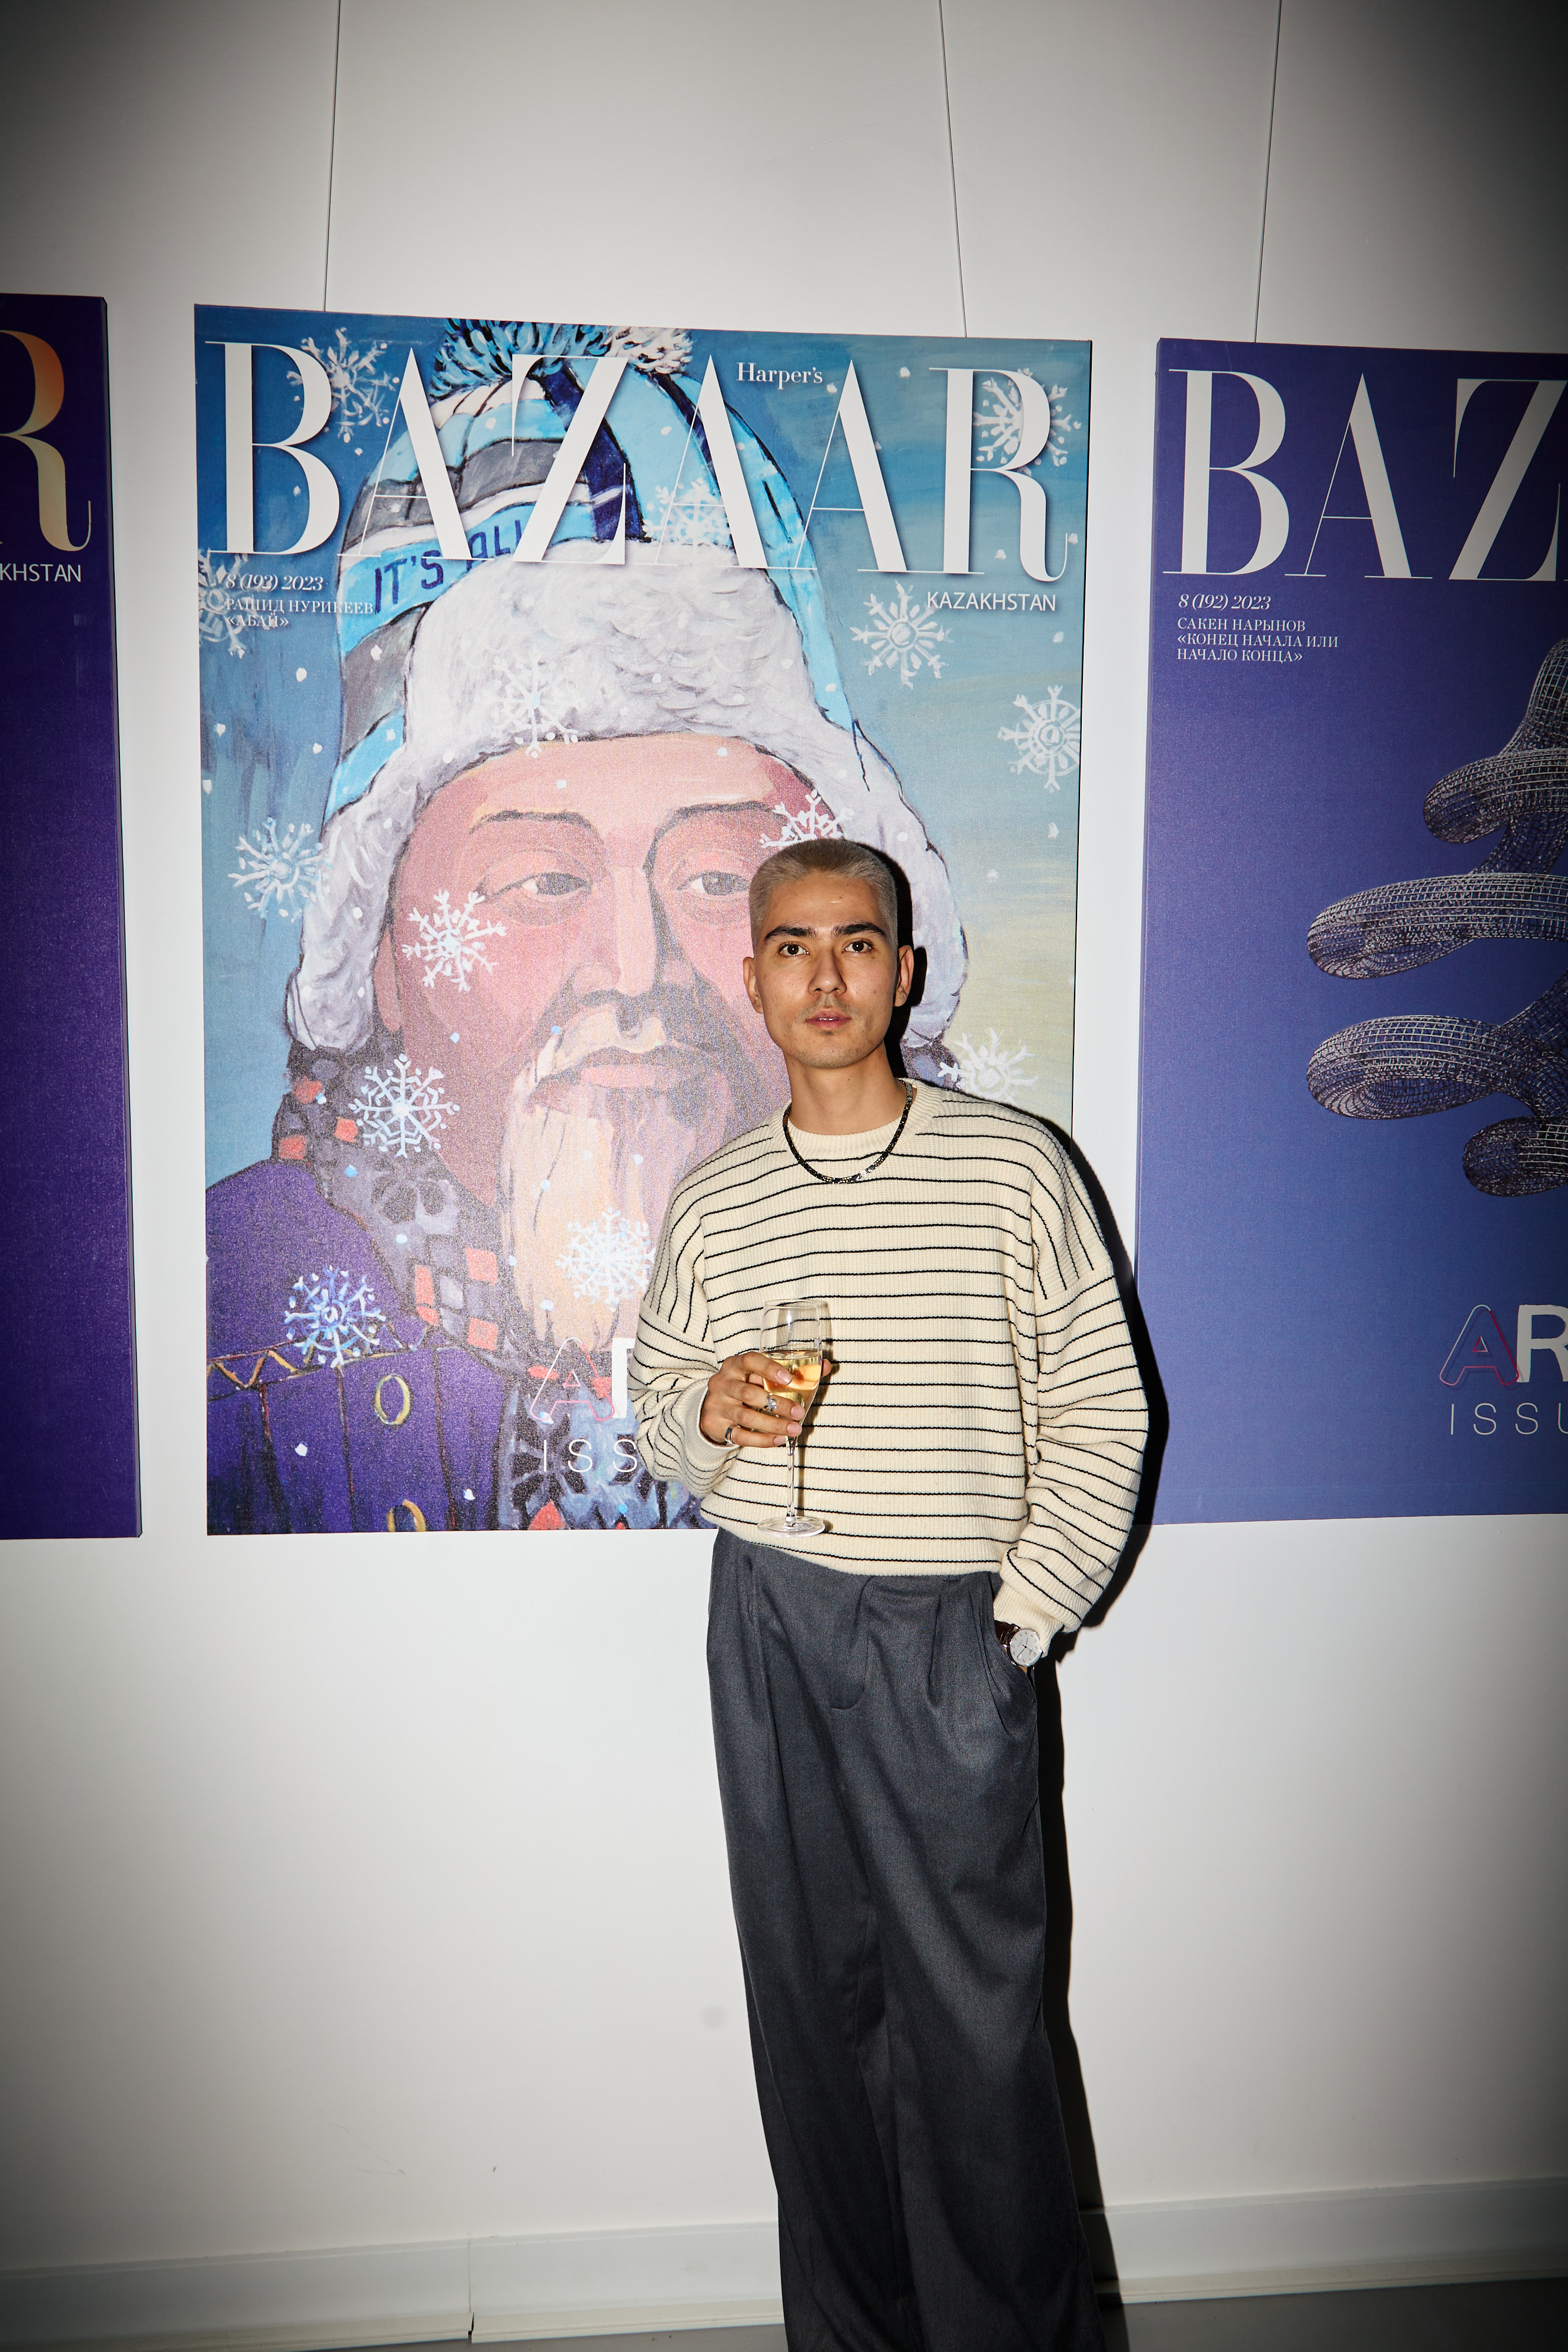 Лариса Азанова, Айя Шалкар и Анвар Мусрепов представили новый номер Harper’s Bazaar Kazakhstan, посвященный искусству